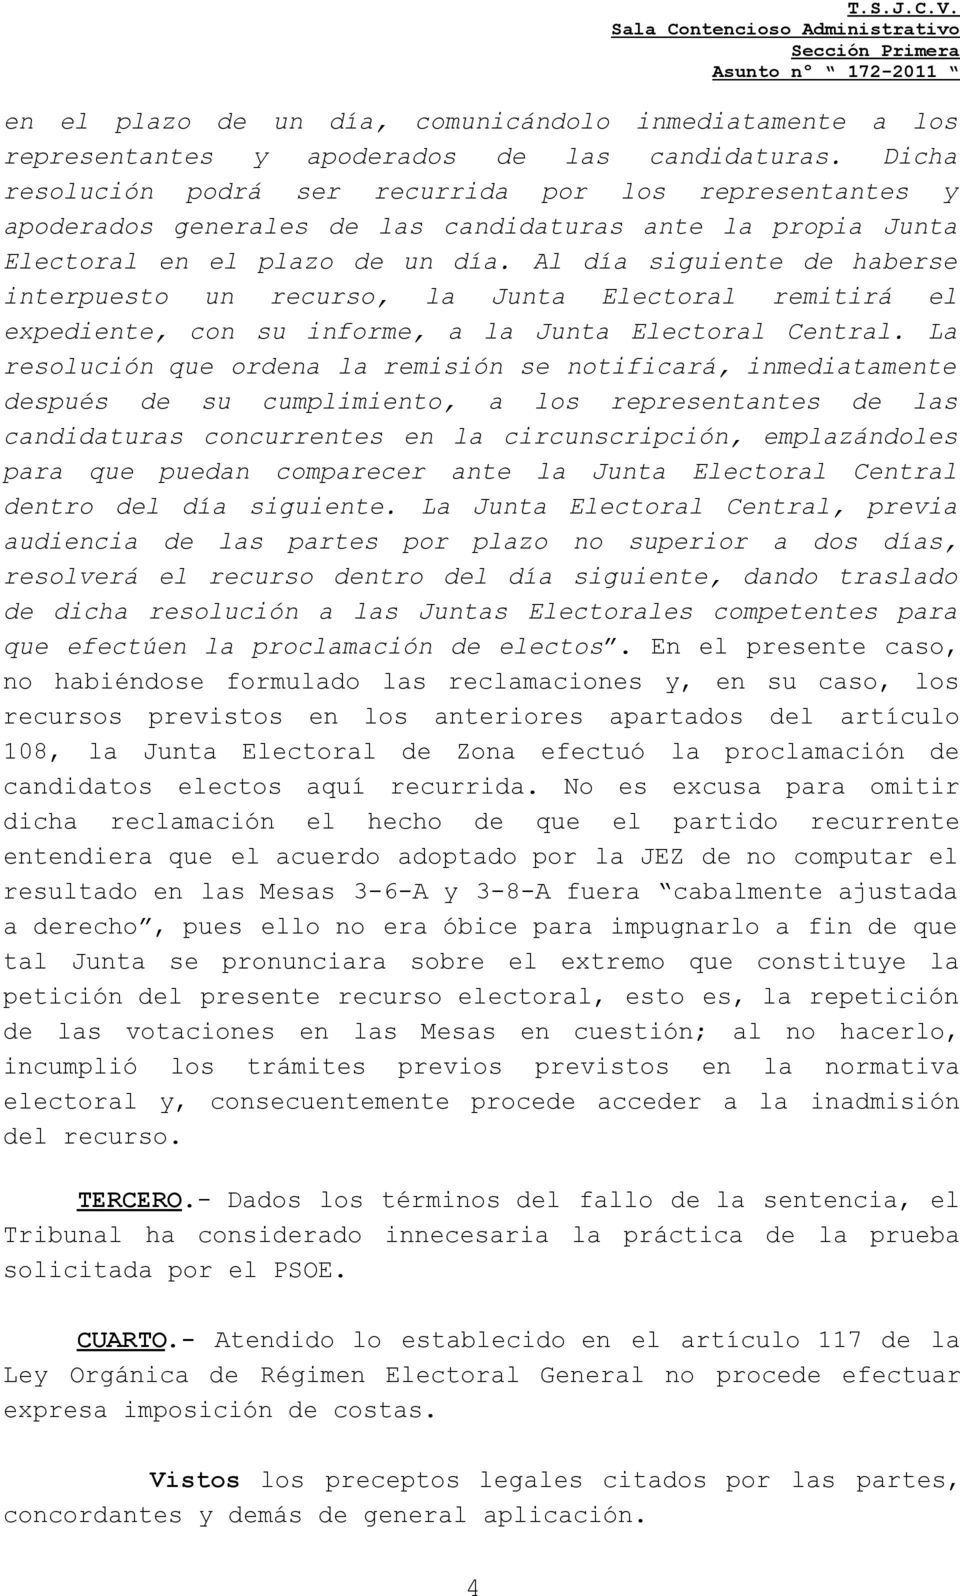 Al día siguiente de haberse interpuesto un recurso, la Junta Electoral remitirá el expediente, con su informe, a la Junta Electoral Central.